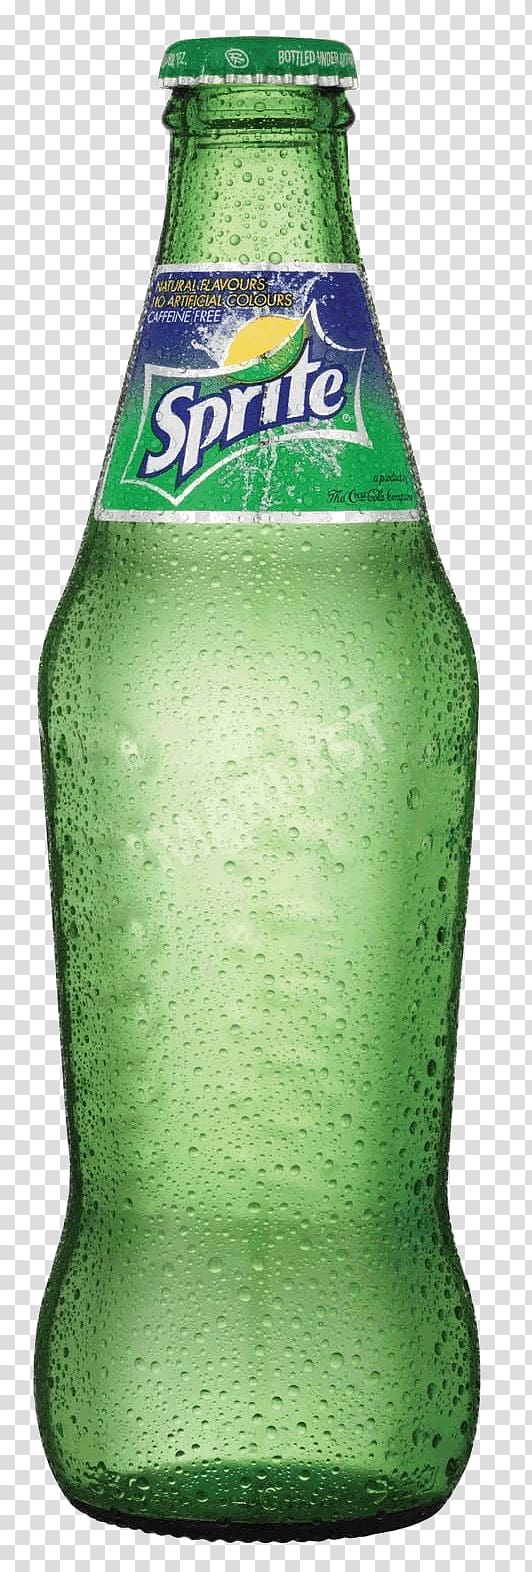 green Sprite beverage bottle, Sprite Glass Bottle transparent background PNG clipart